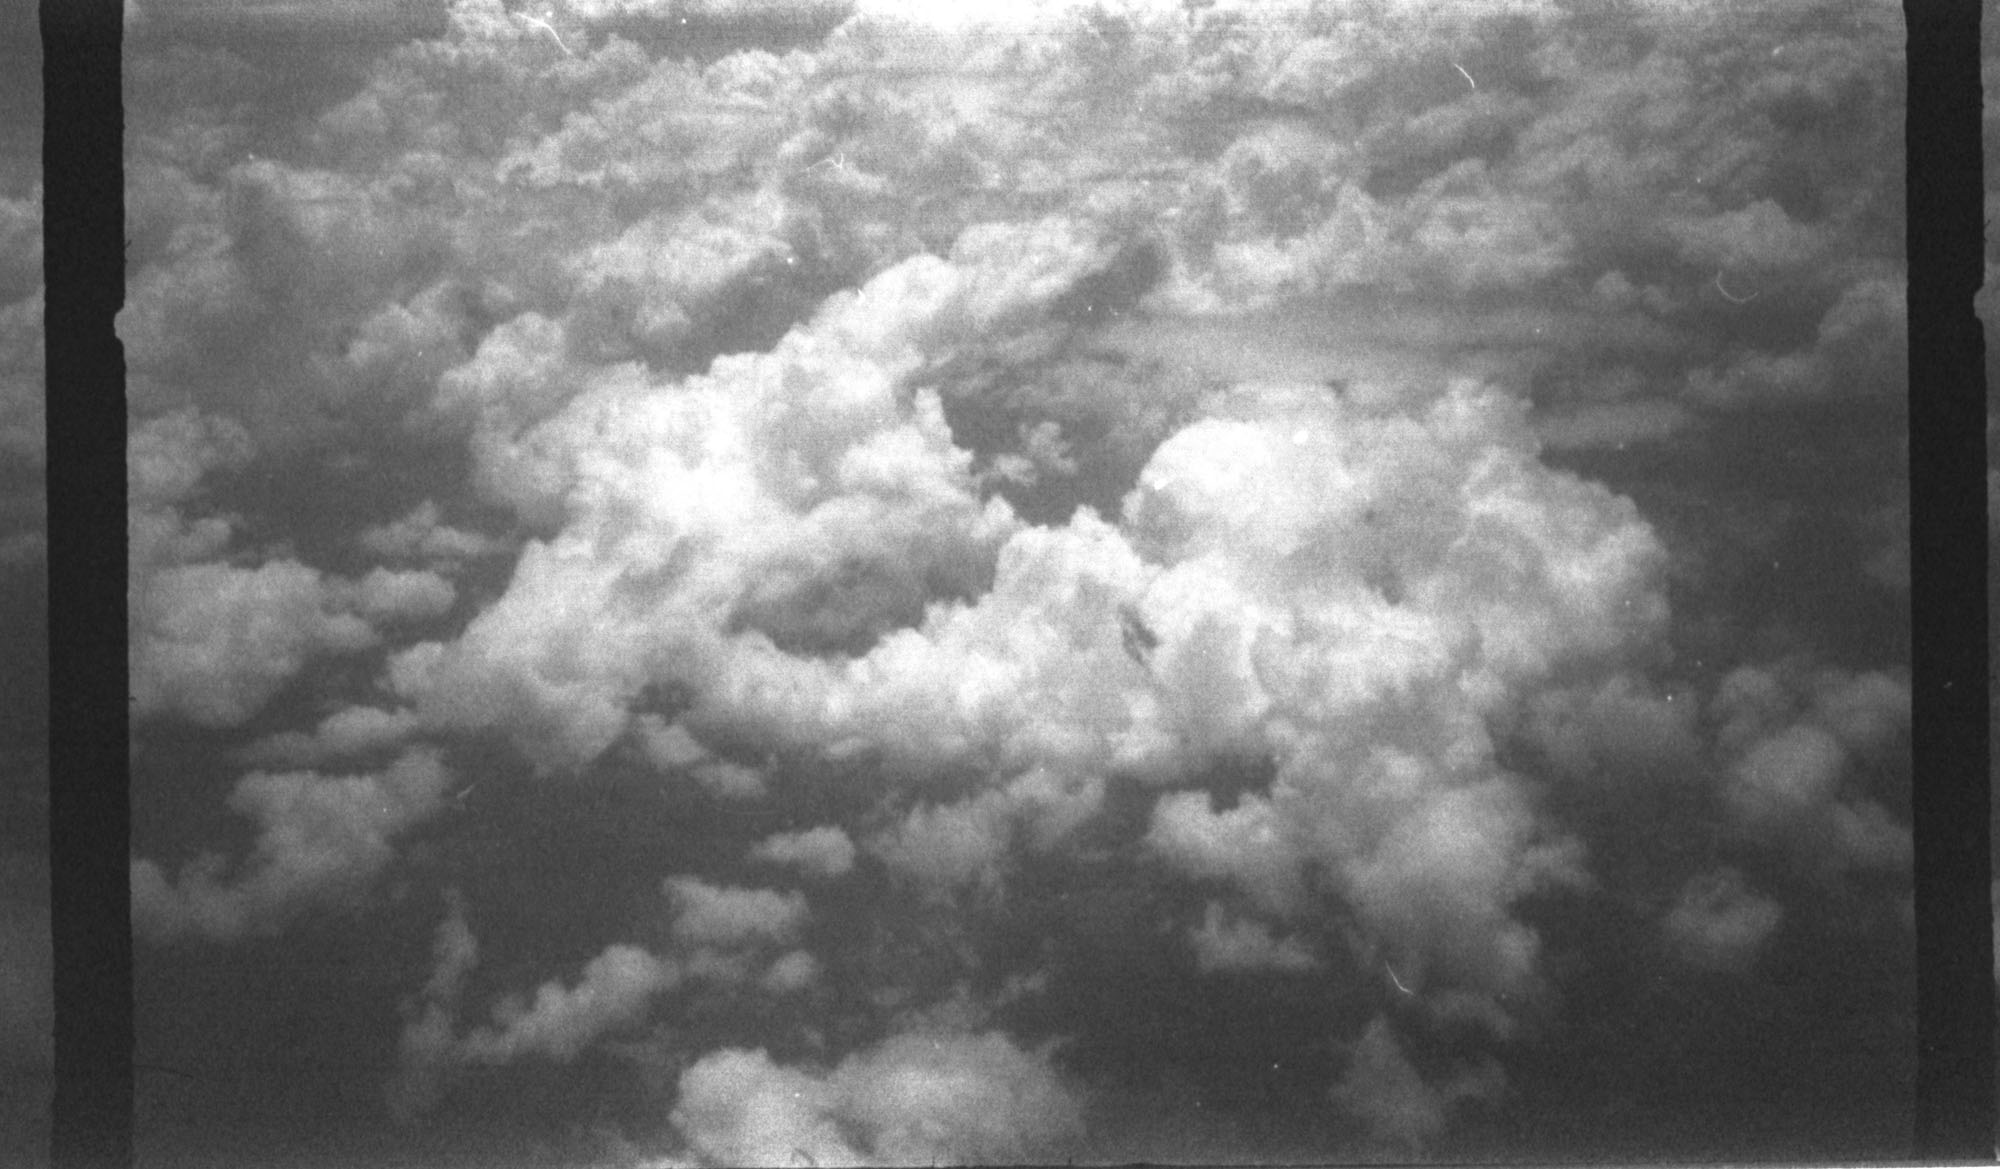 Des nuages en noir et blanc